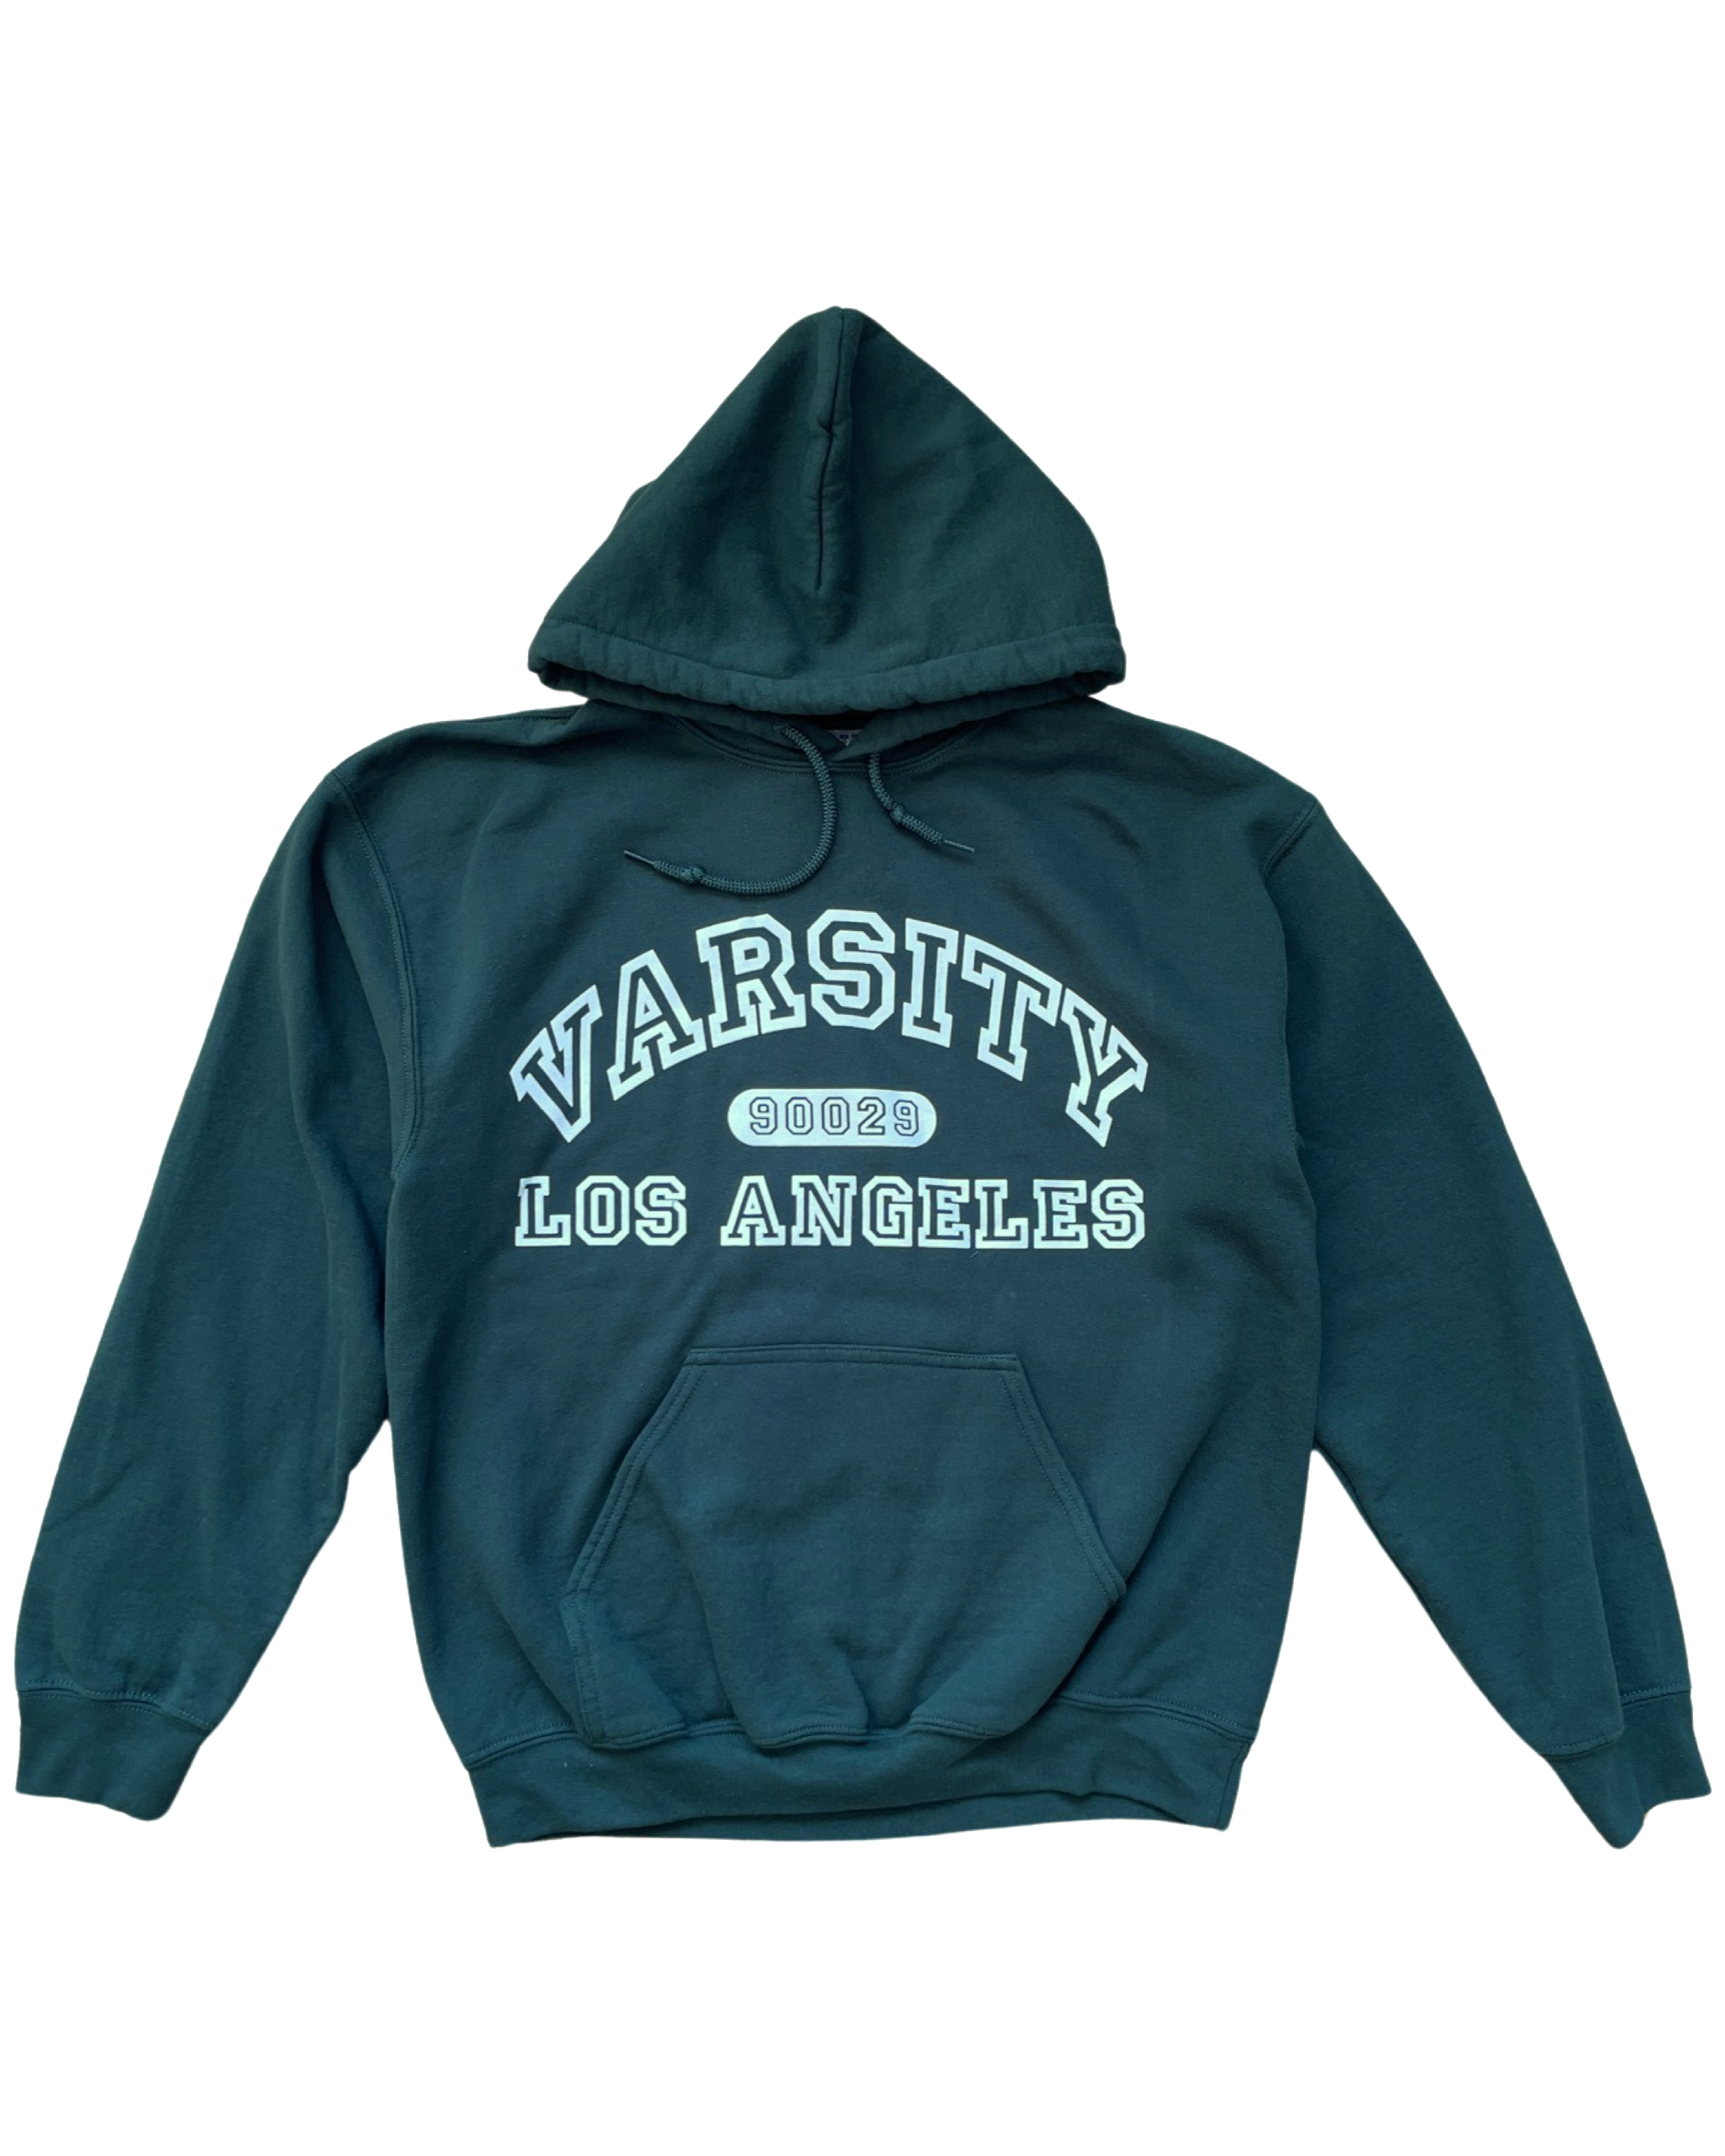 Pro Standard Los Angeles Angels Wool Varsity Jacket